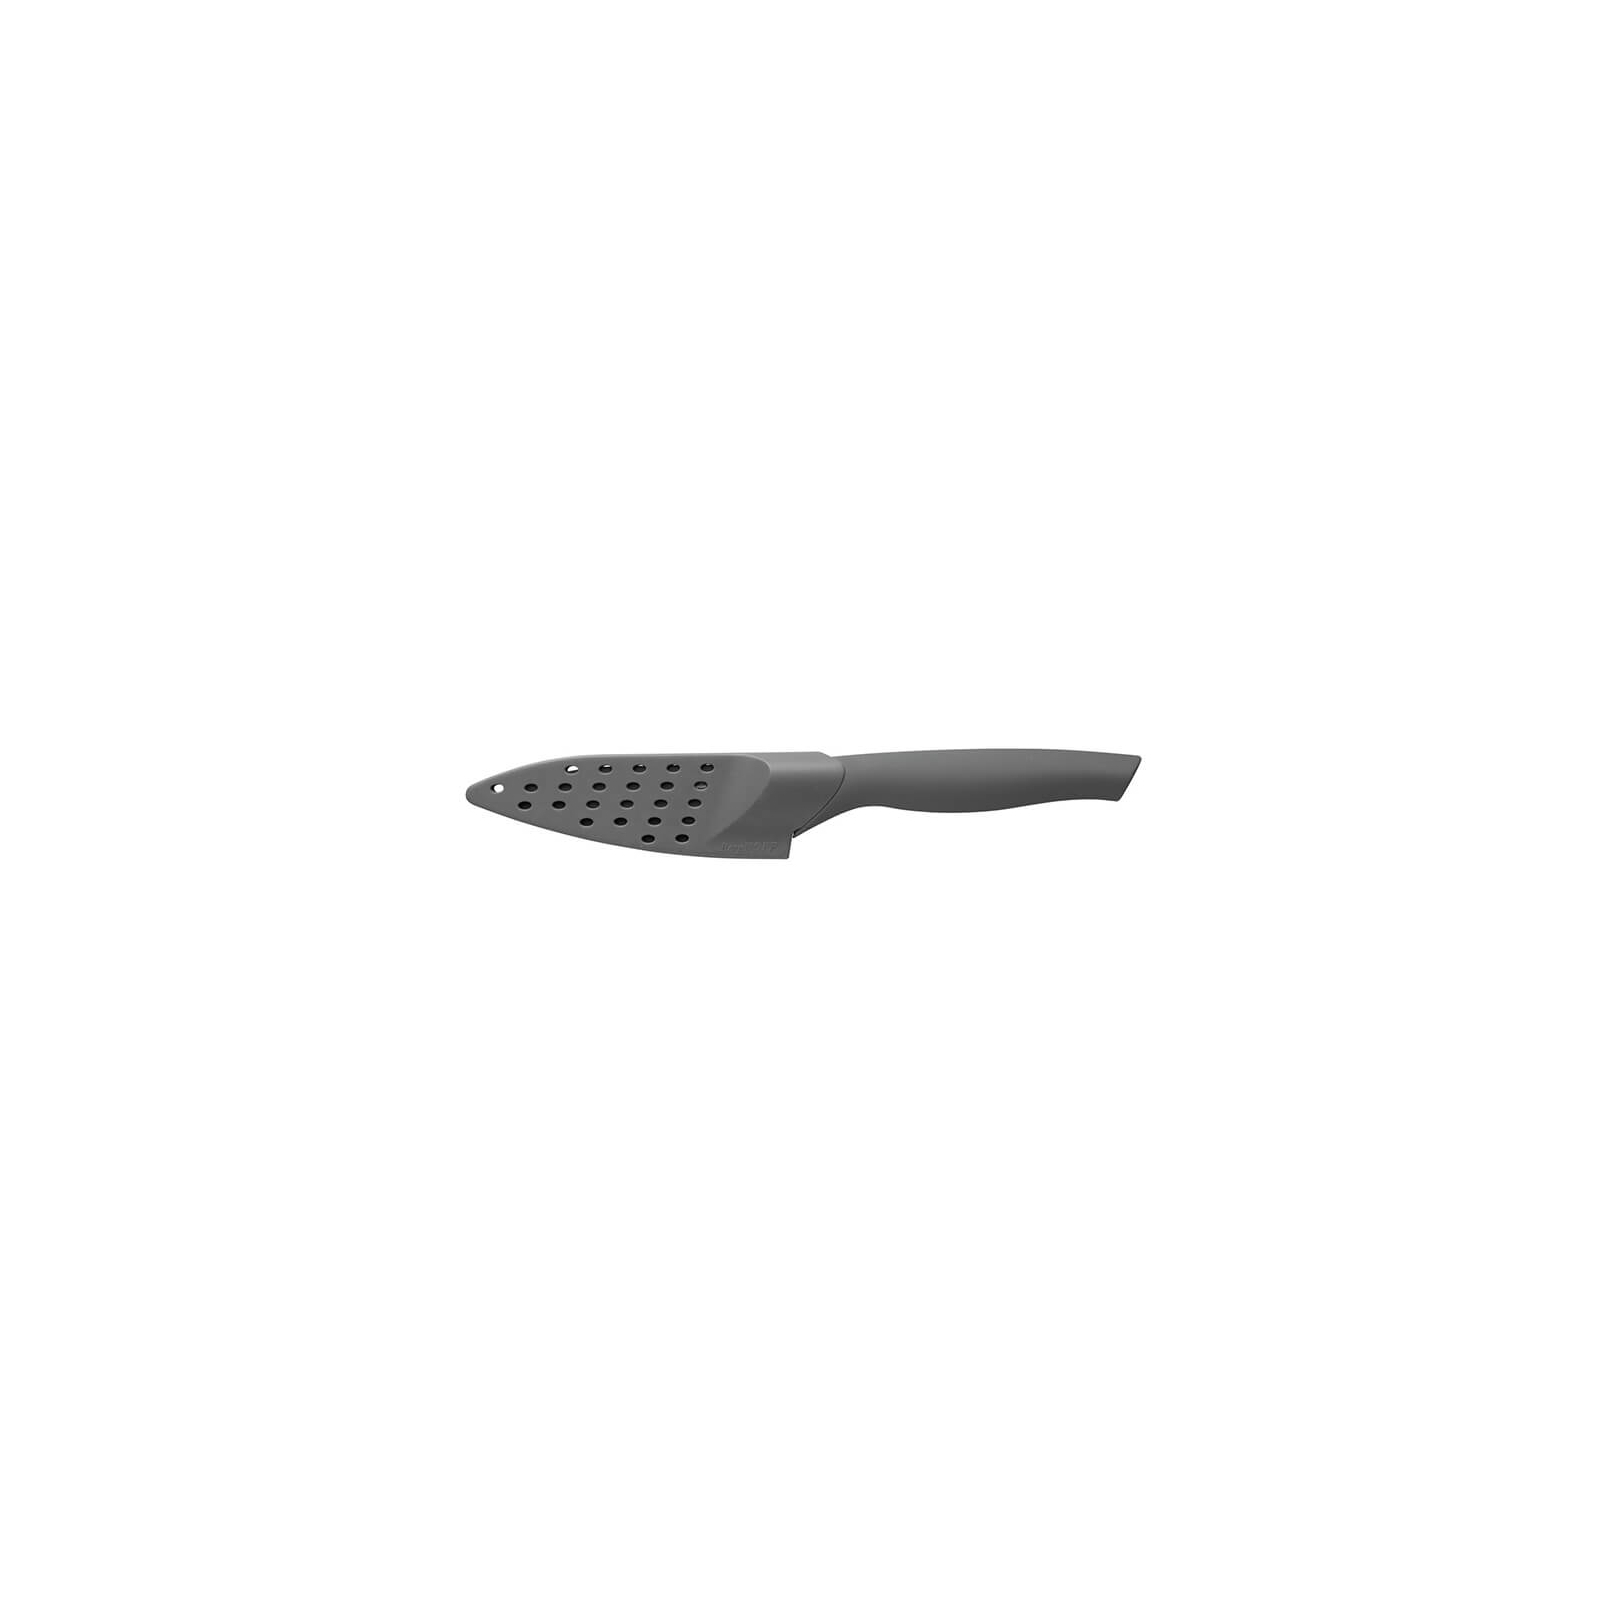 Кухонный нож BergHOFF Essentials Eclipse поварской с покрытием 130 мм (1301049) изображение 3